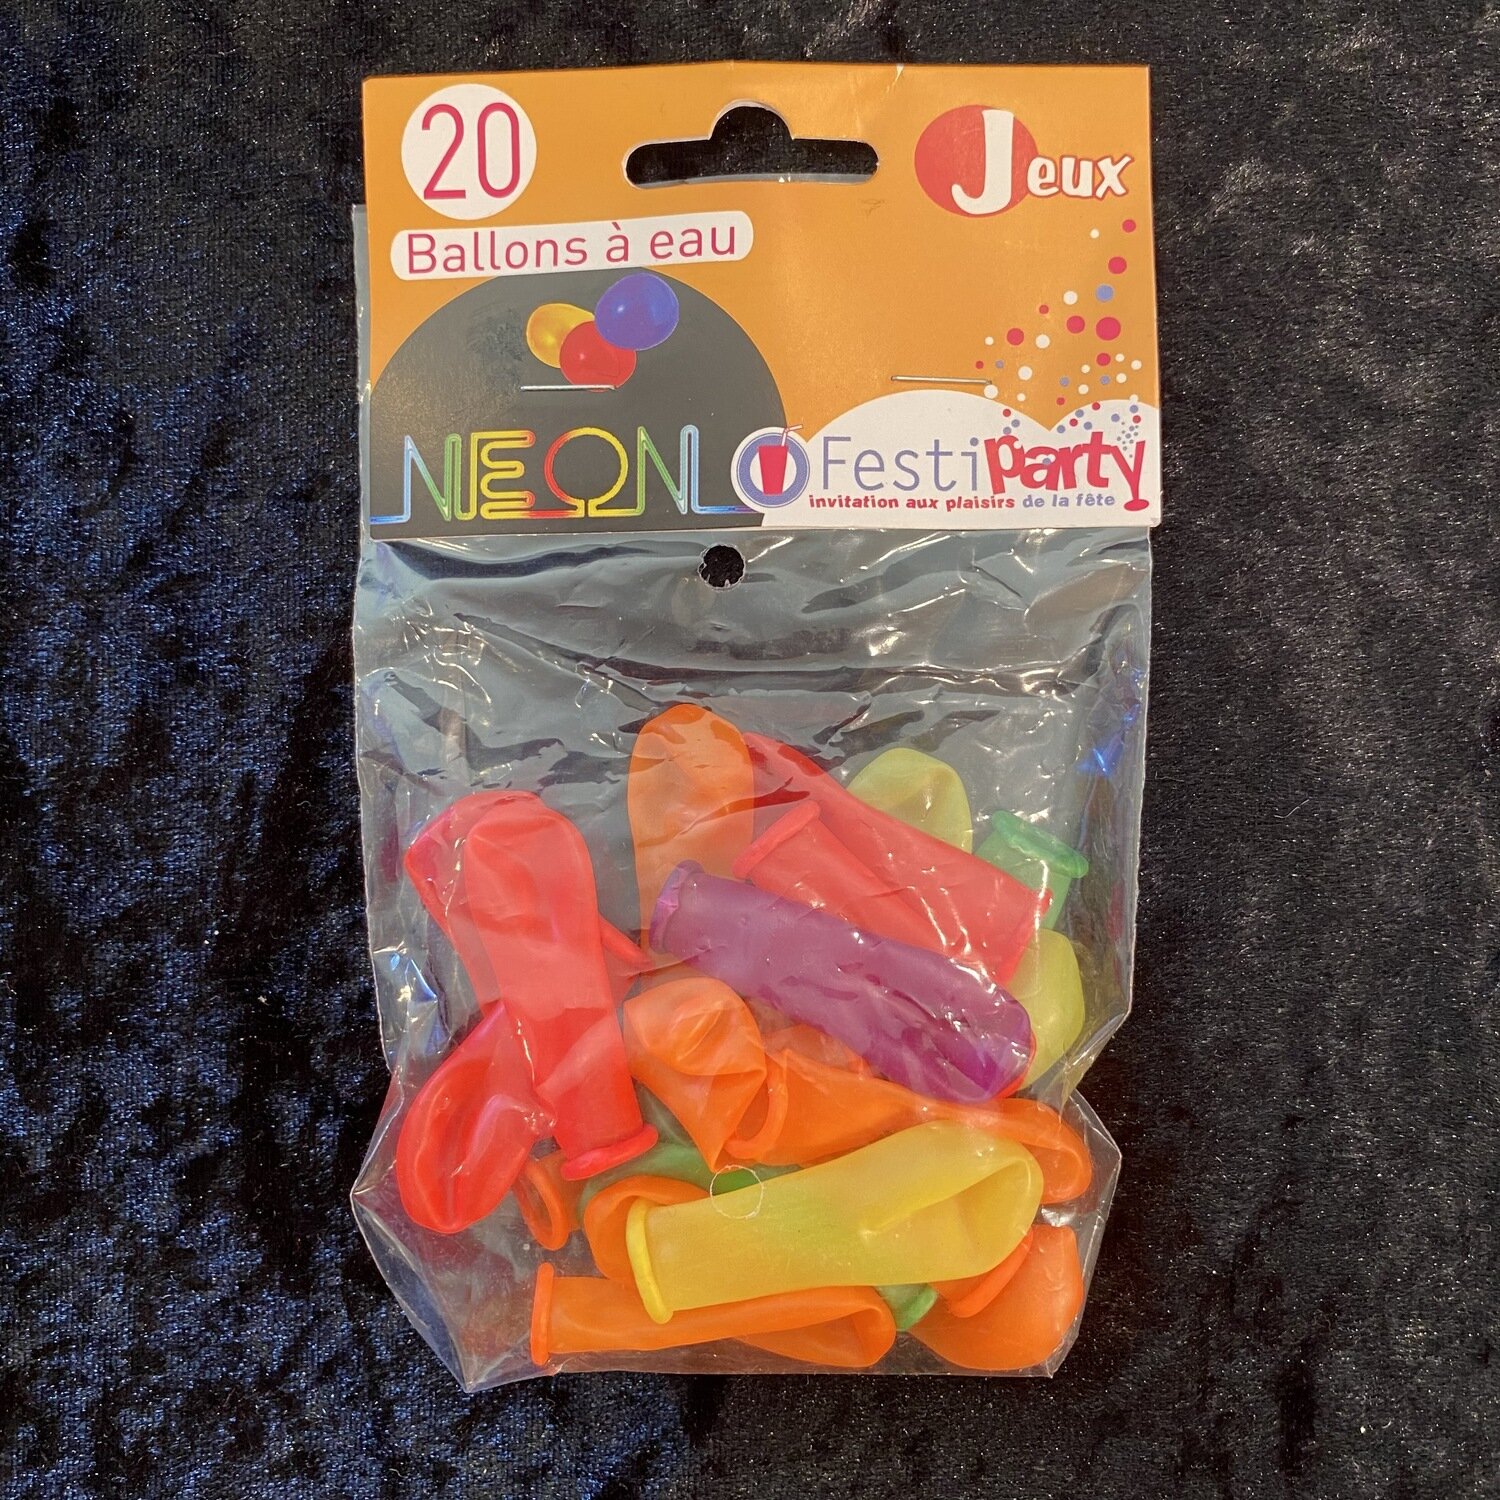 20 ballons néon à eau